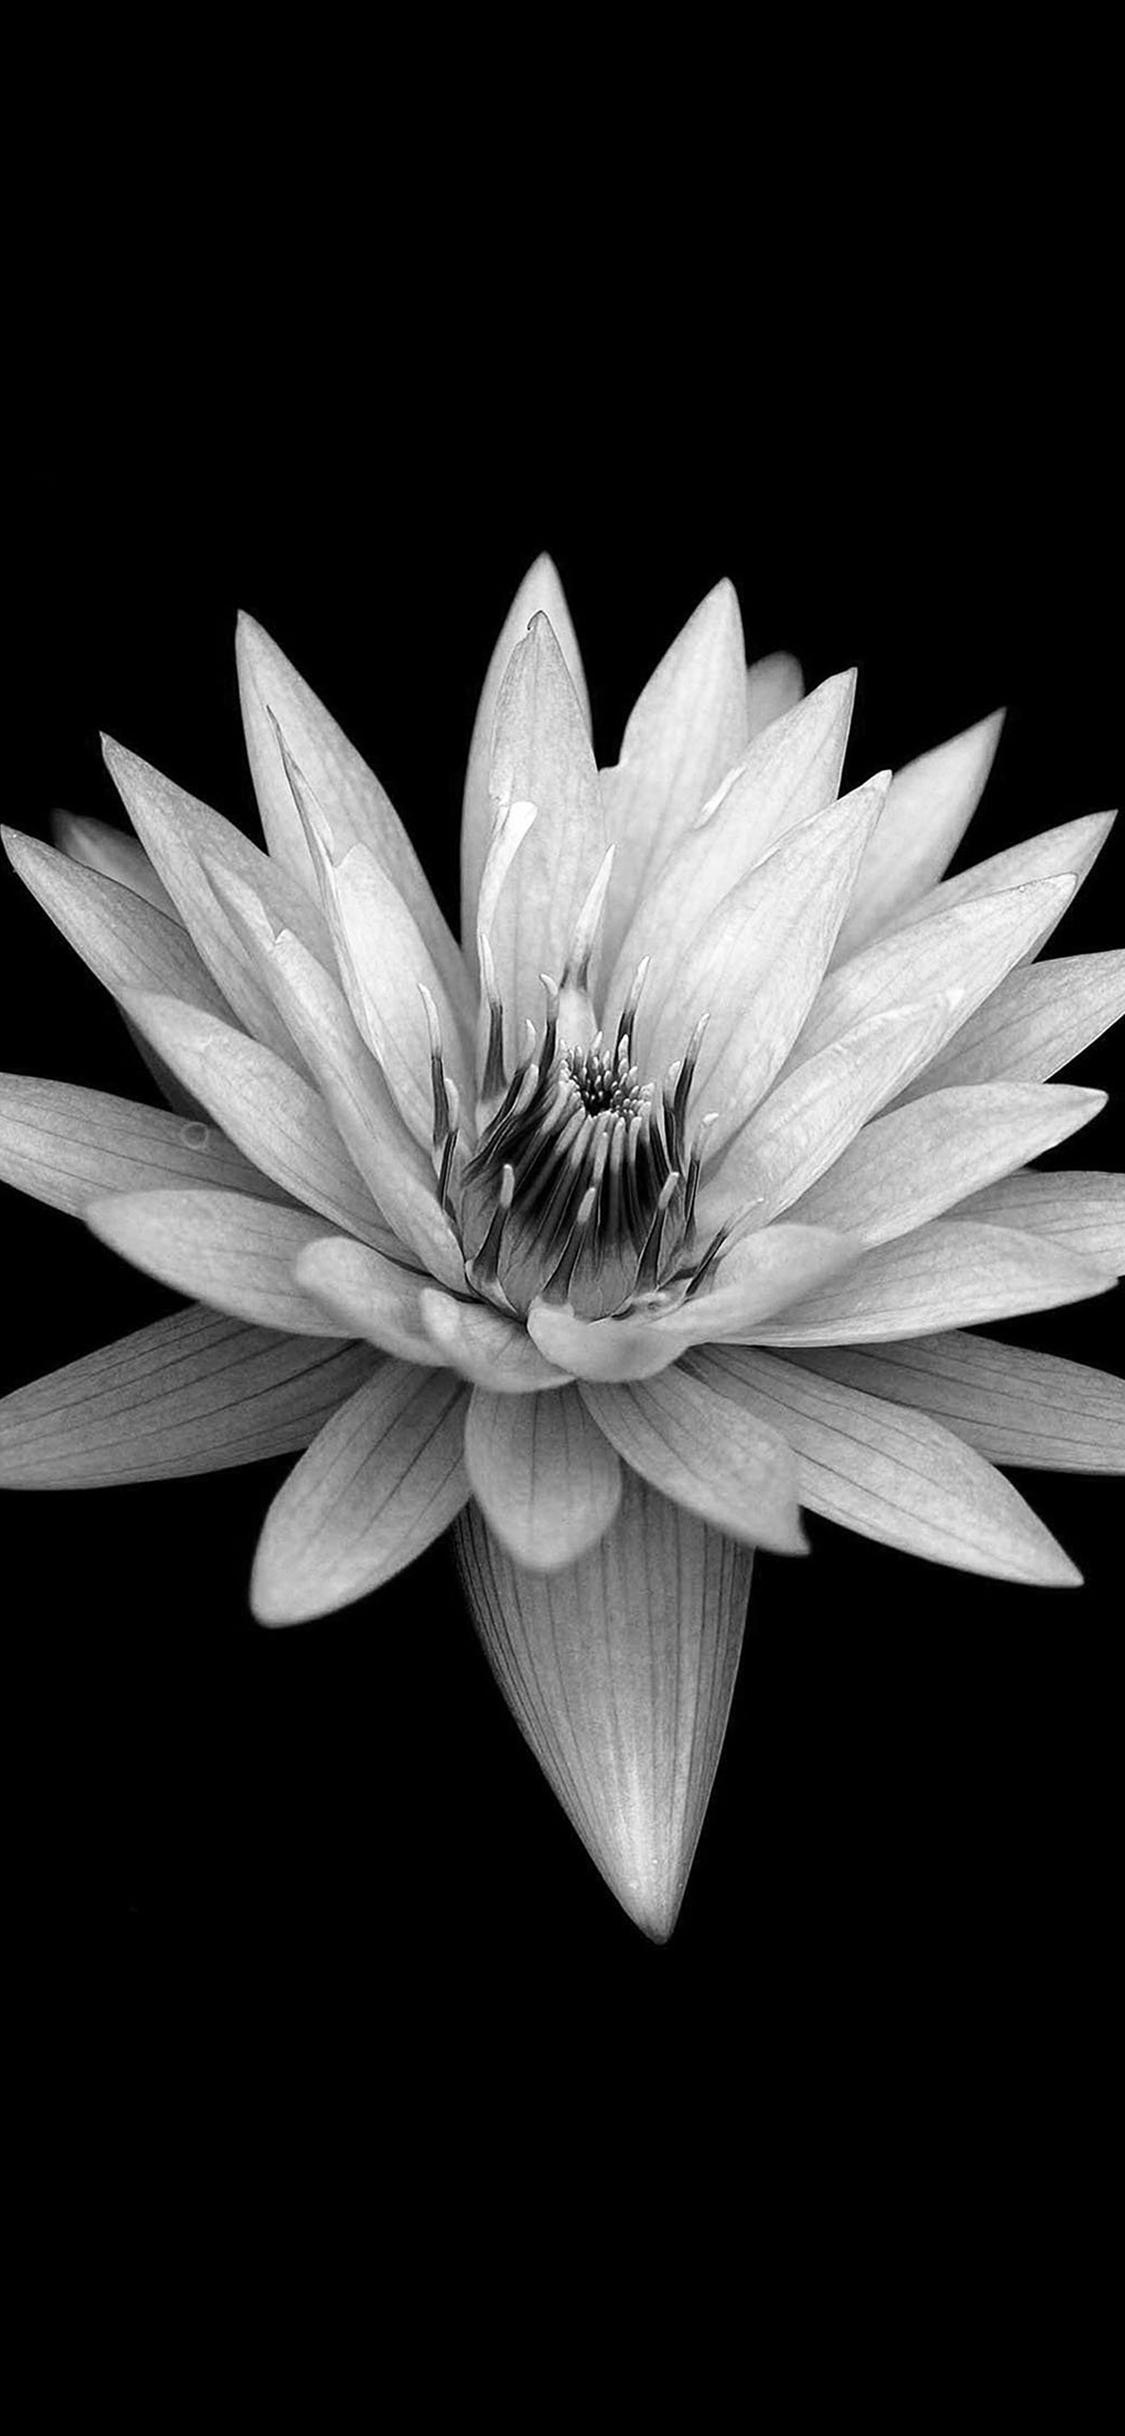 Dark Flower Black Background iPhone X Wallpaper Free Download